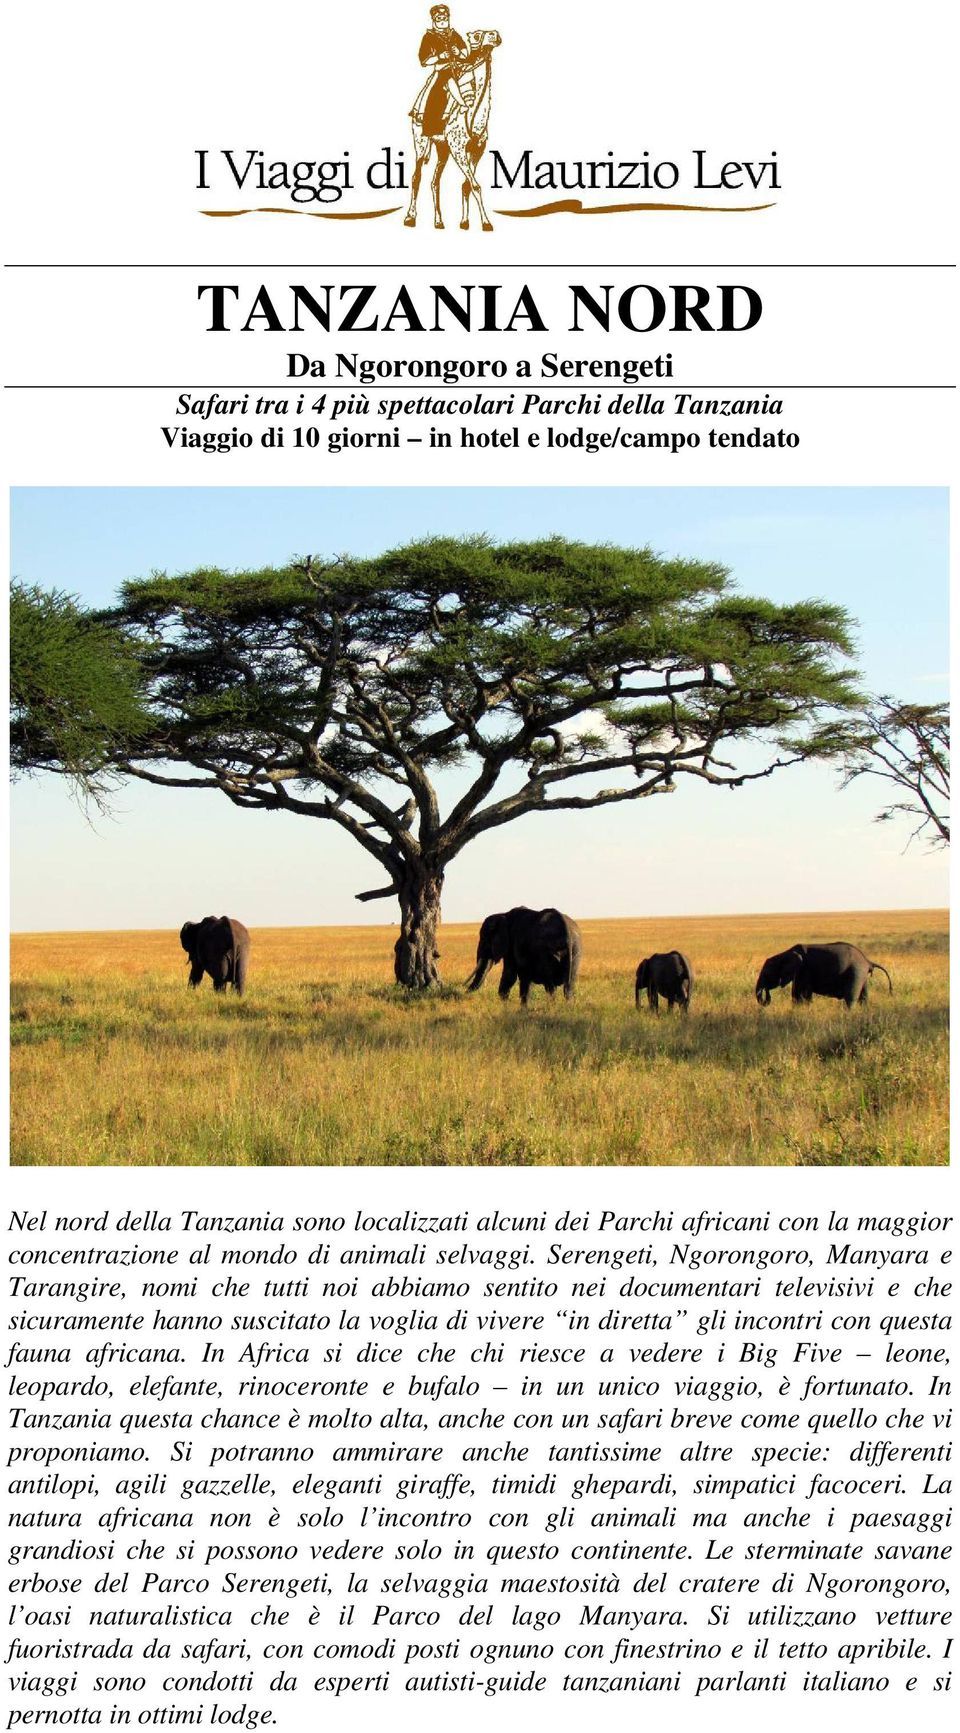 Serengeti, Ngorongoro, Manyara e Tarangire, nomi che tutti noi abbiamo sentito nei documentari televisivi e che sicuramente hanno suscitato la voglia di vivere in diretta gli incontri con questa